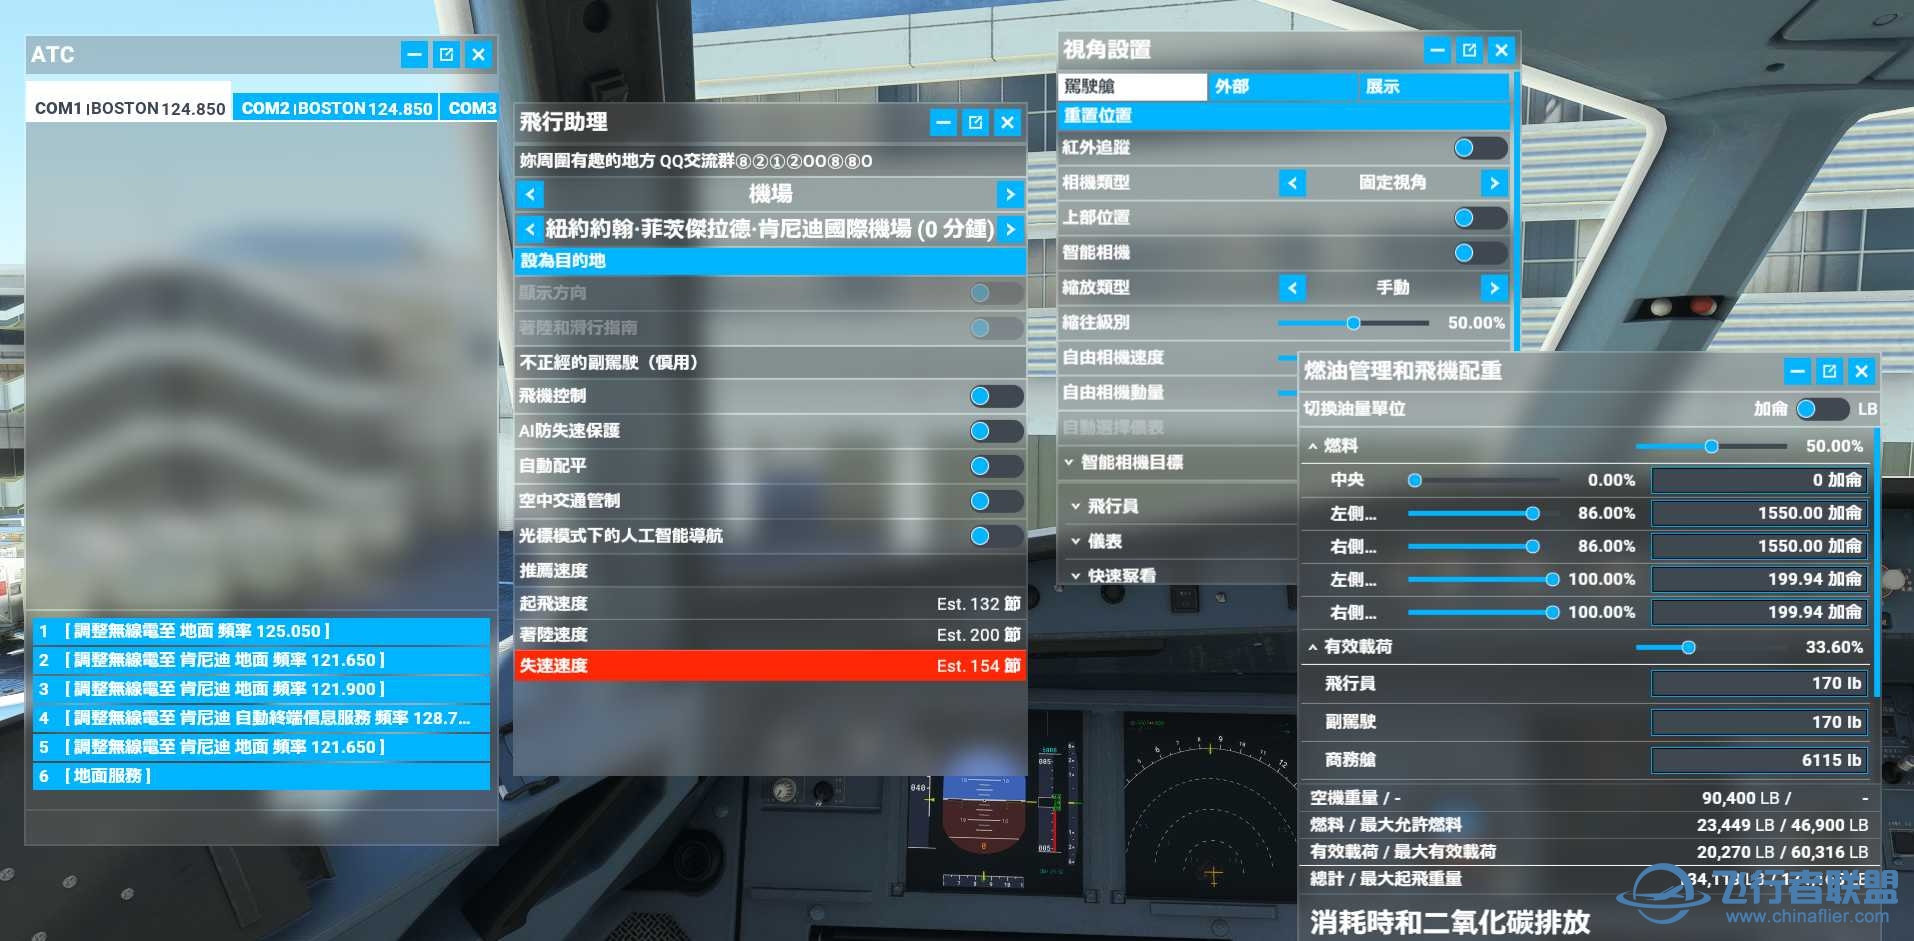 微软模拟飞行2020 1.18.14 繁体中文4.0发布版-6010 